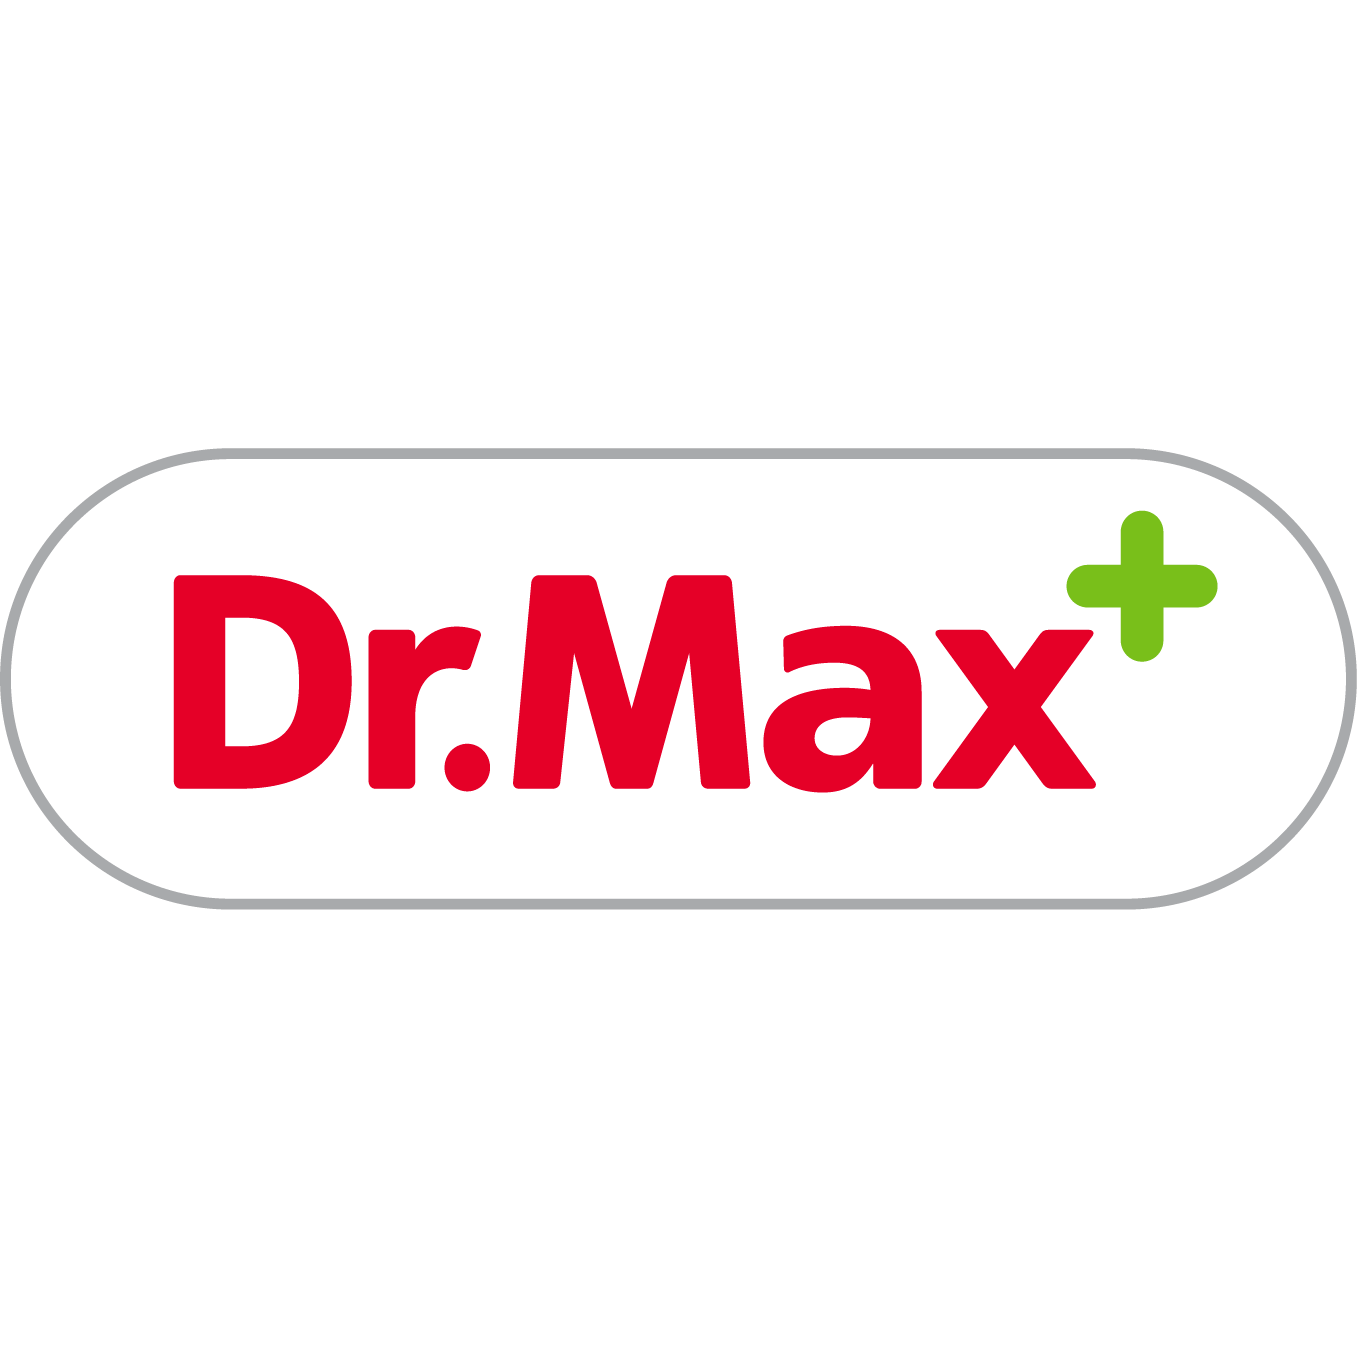 Farmacia Dr.Max - Farmacie San Mauro Torinese